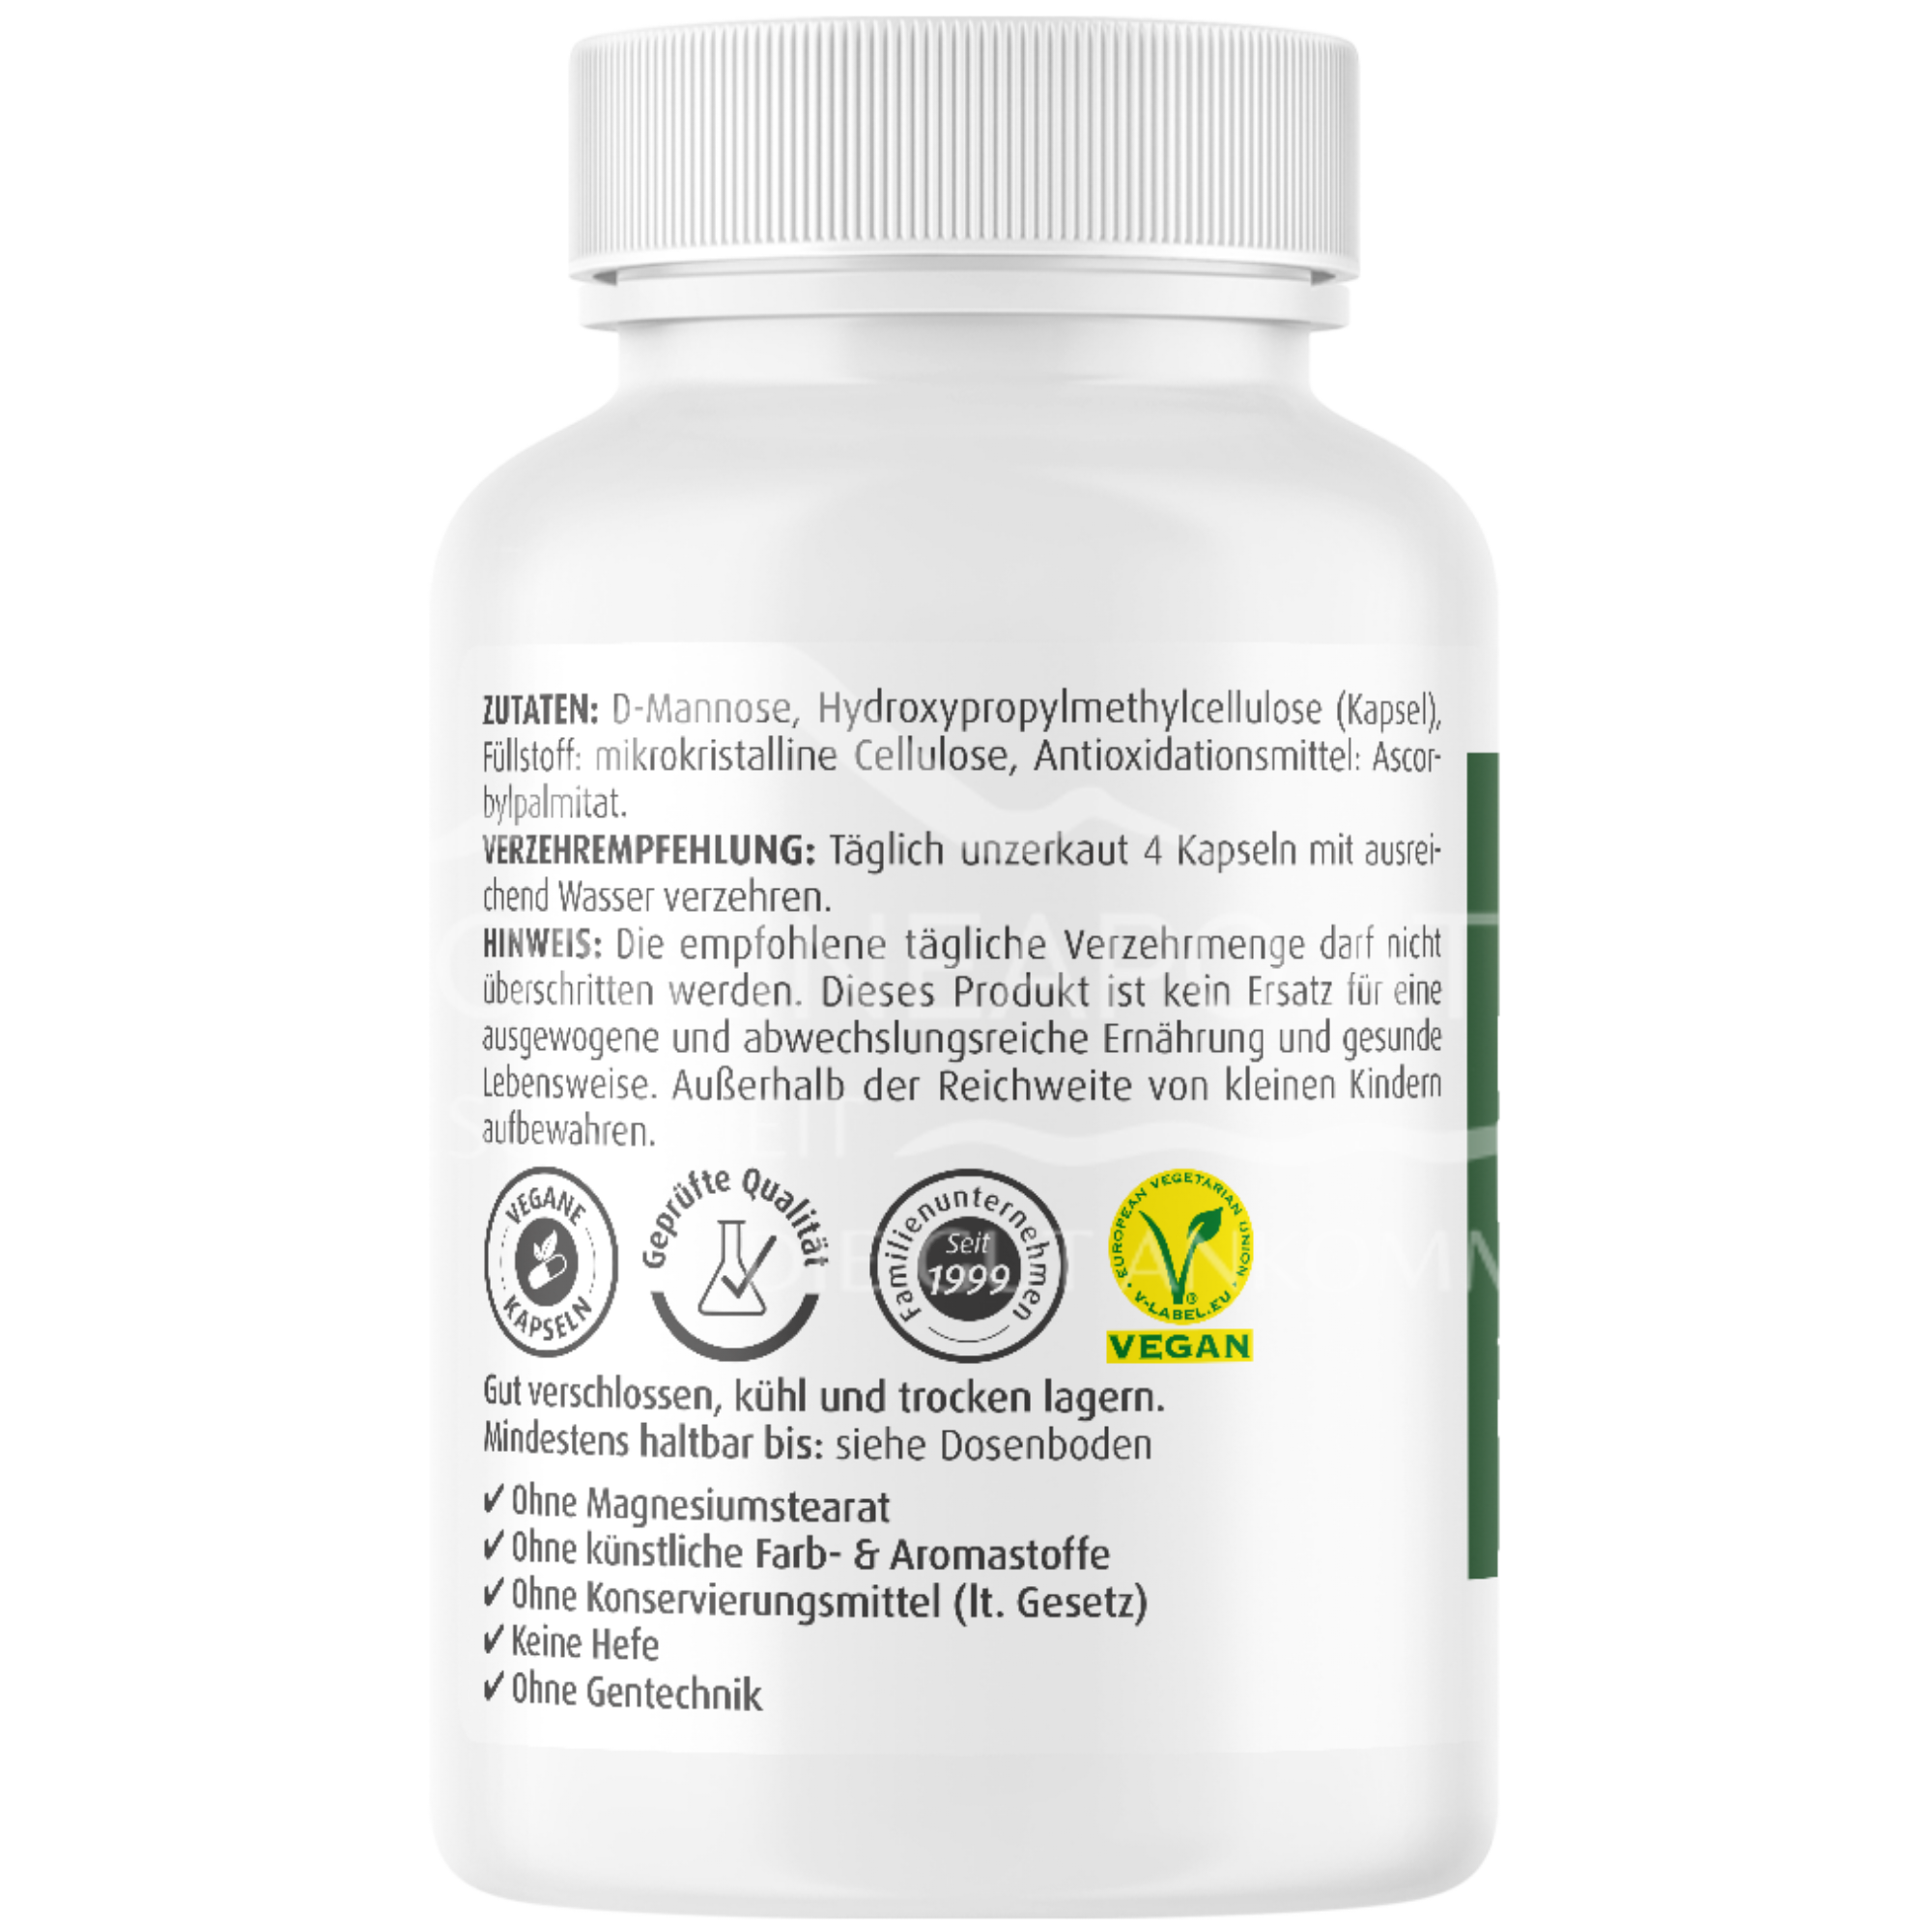 ZeinPharma Natural D-Mannose 500 mg Kapseln